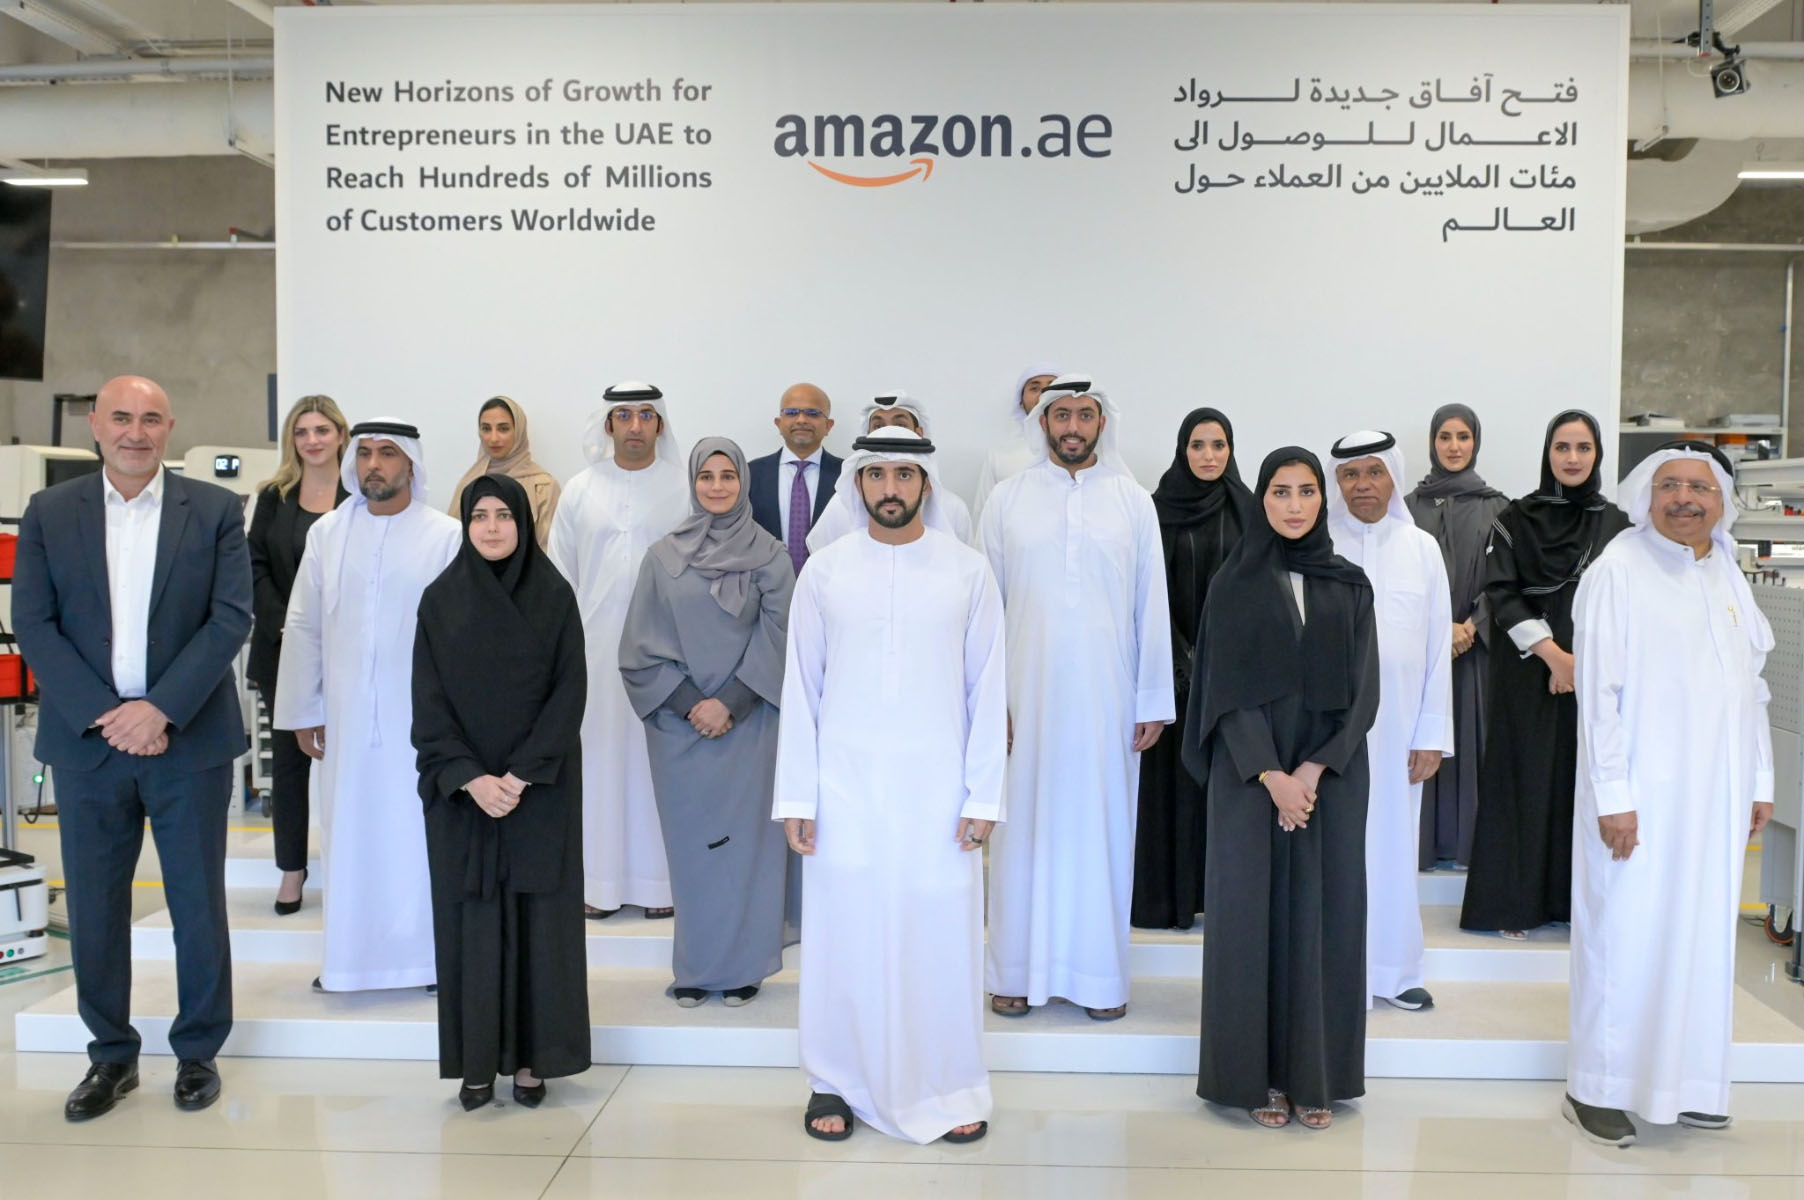 sheikh hamdan amazon dubai digital economy expansion